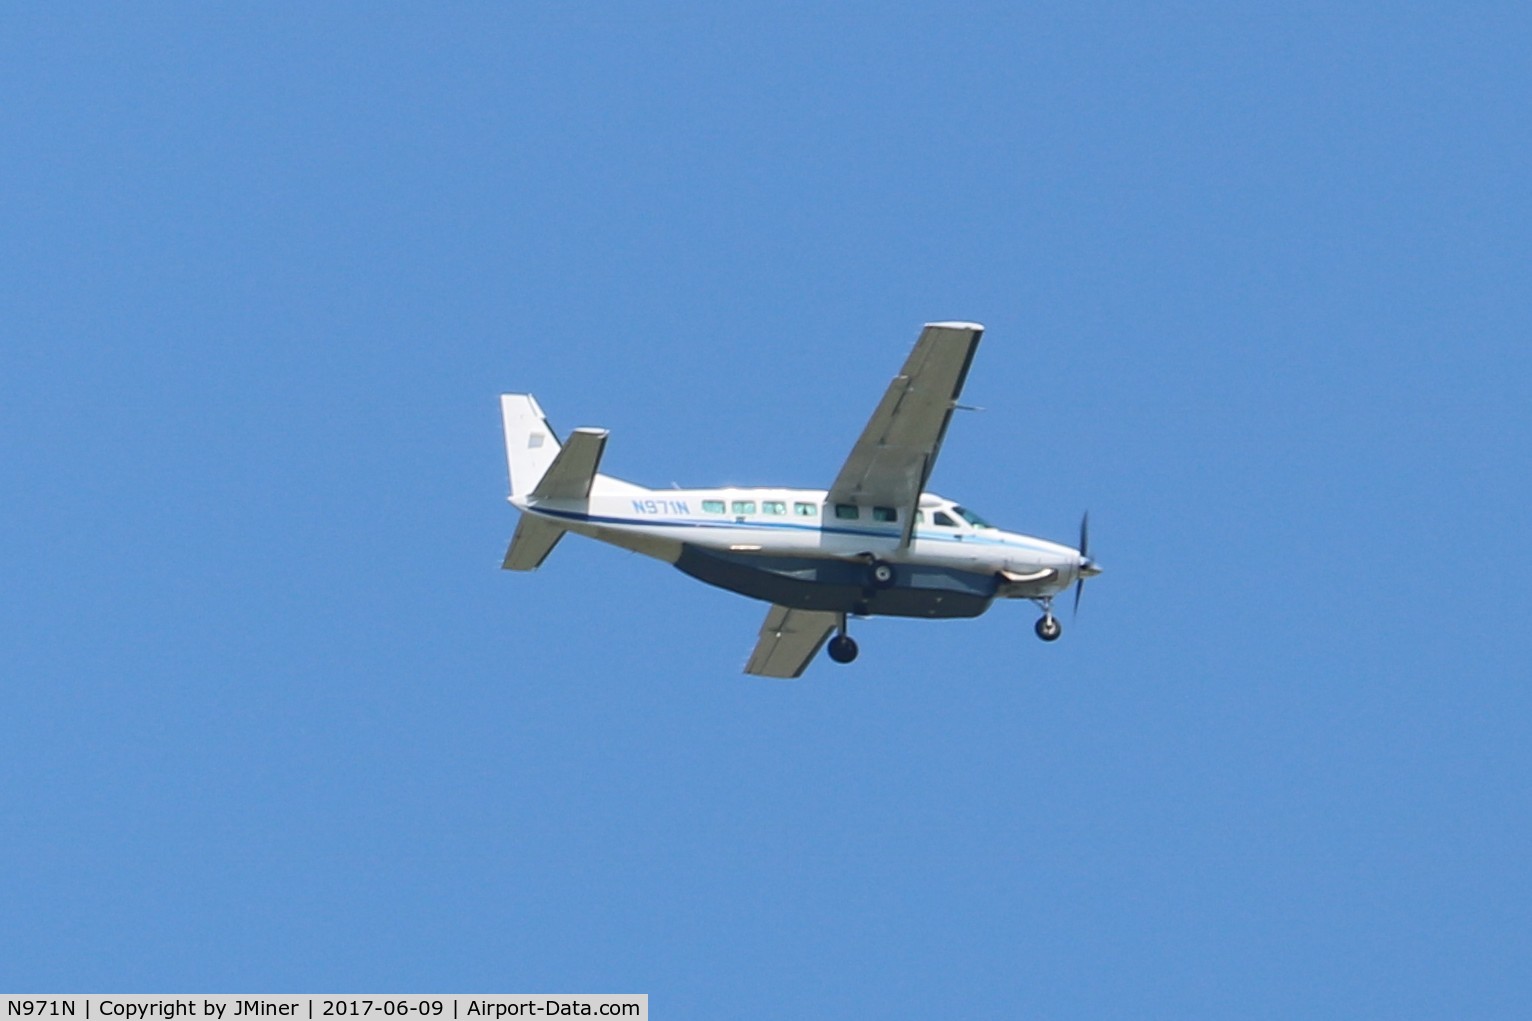 N971N, 2004 Cessna 208B Grand Caravan C/N 208B1071, Flying over Geneva, IL.